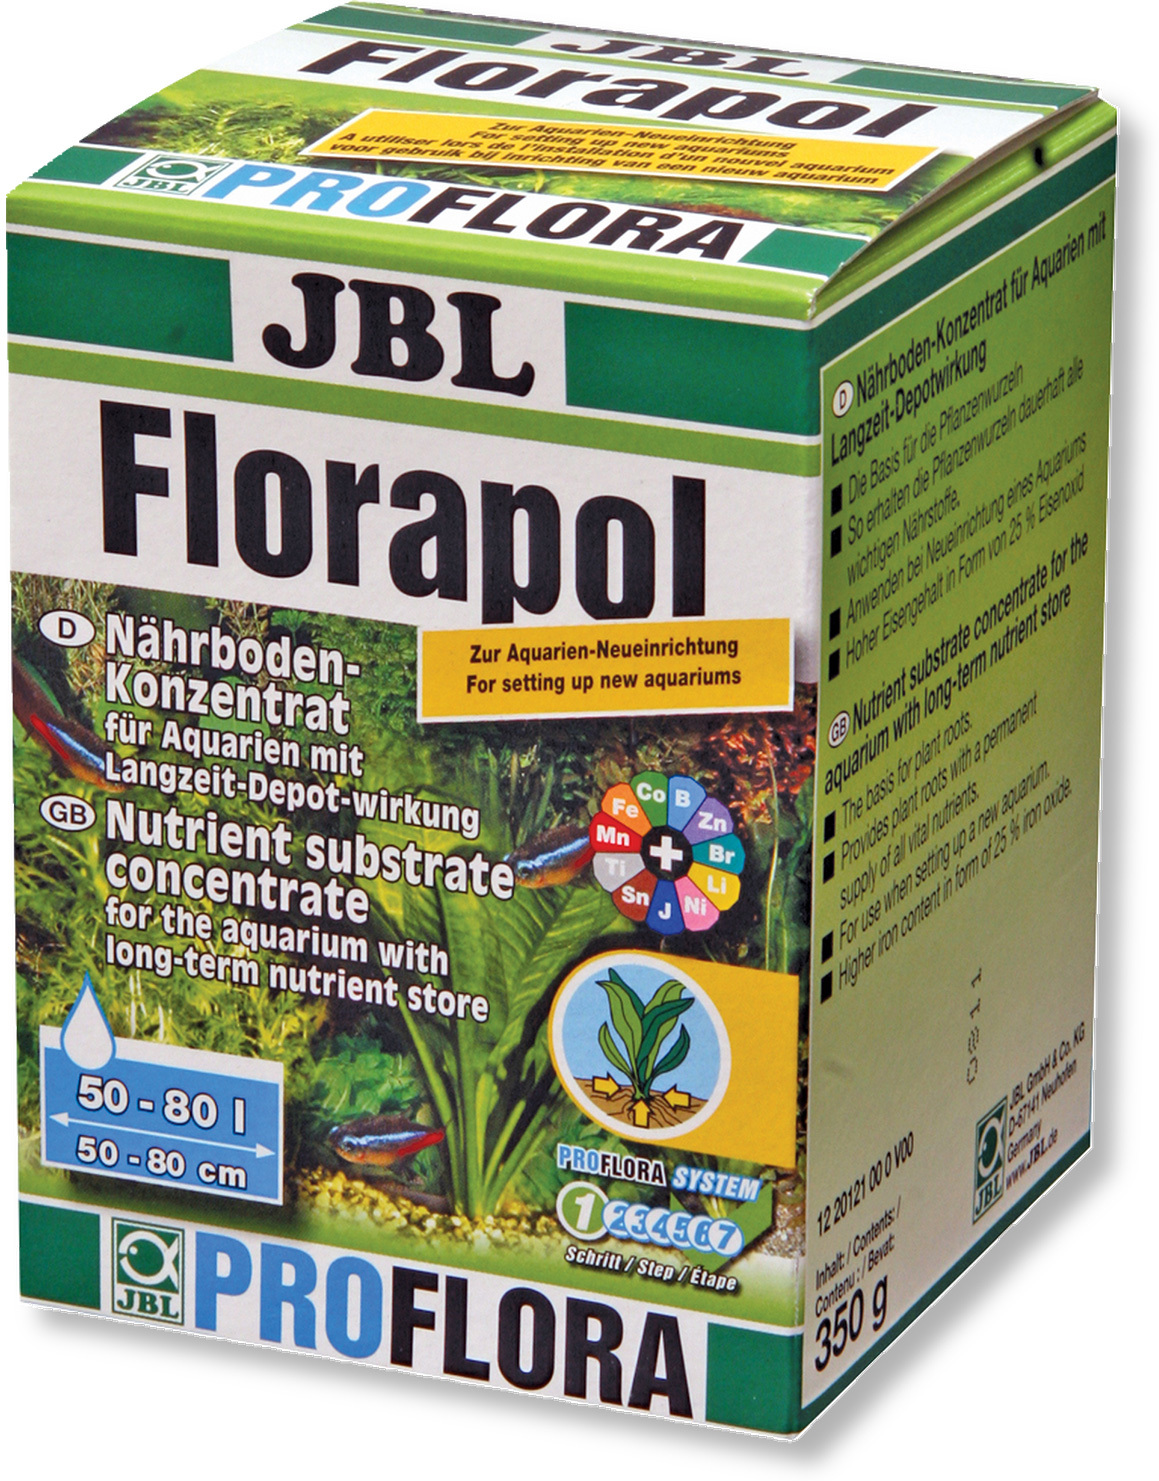 JBL Florapol fertilizator pentru plante - zoom